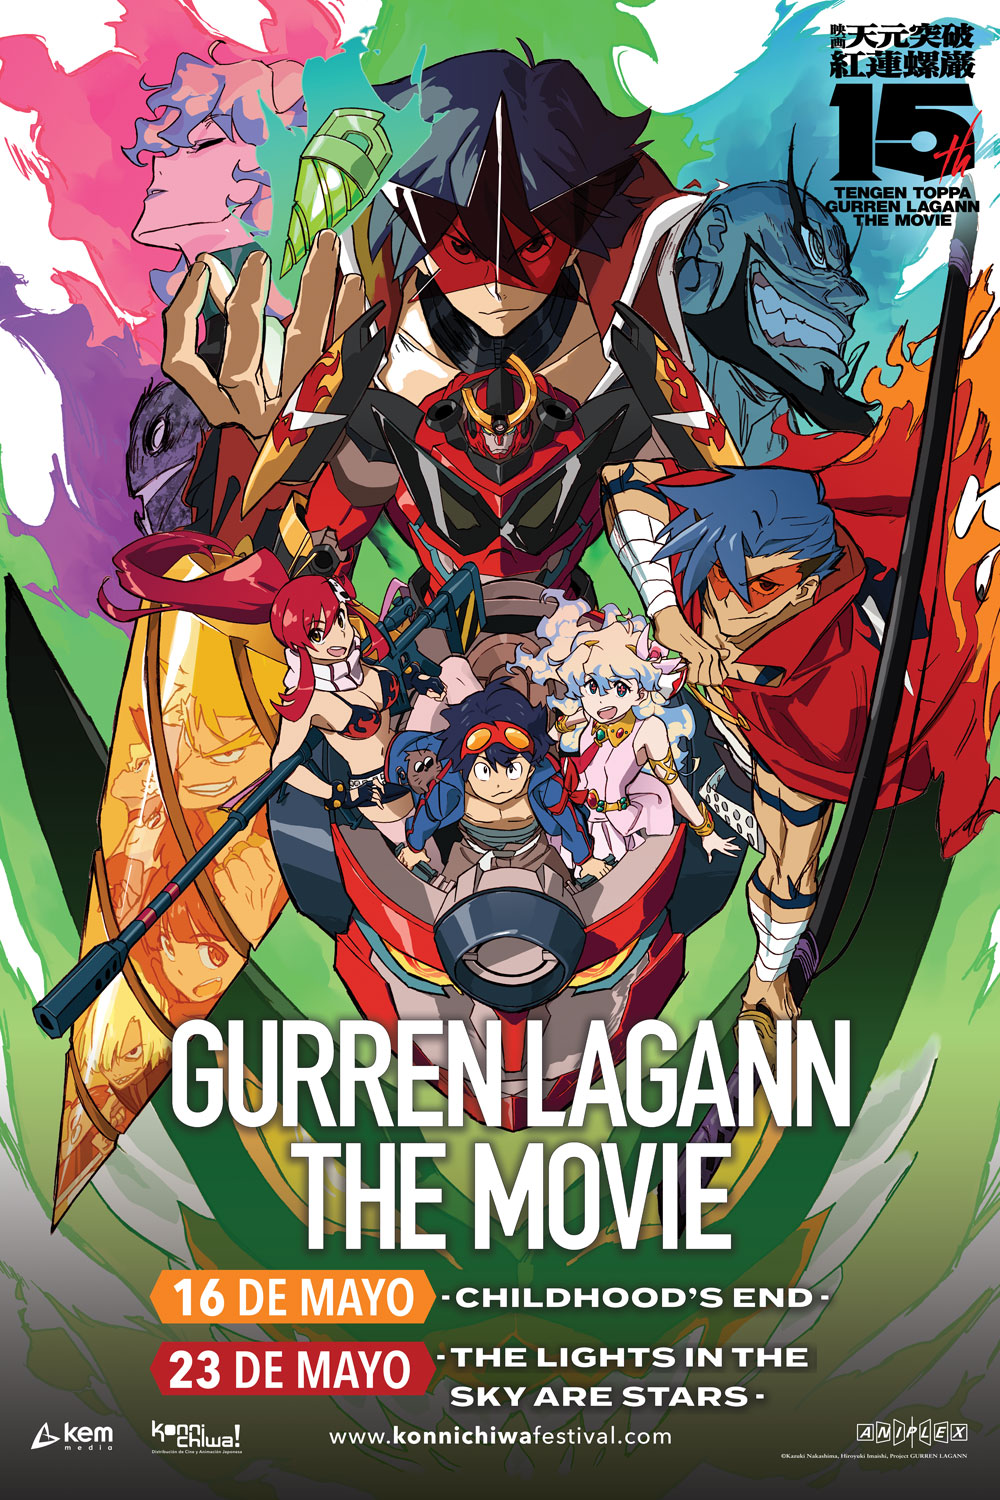 ¡Celebra el 15 Aniversario de Gurren Lagann en cines!